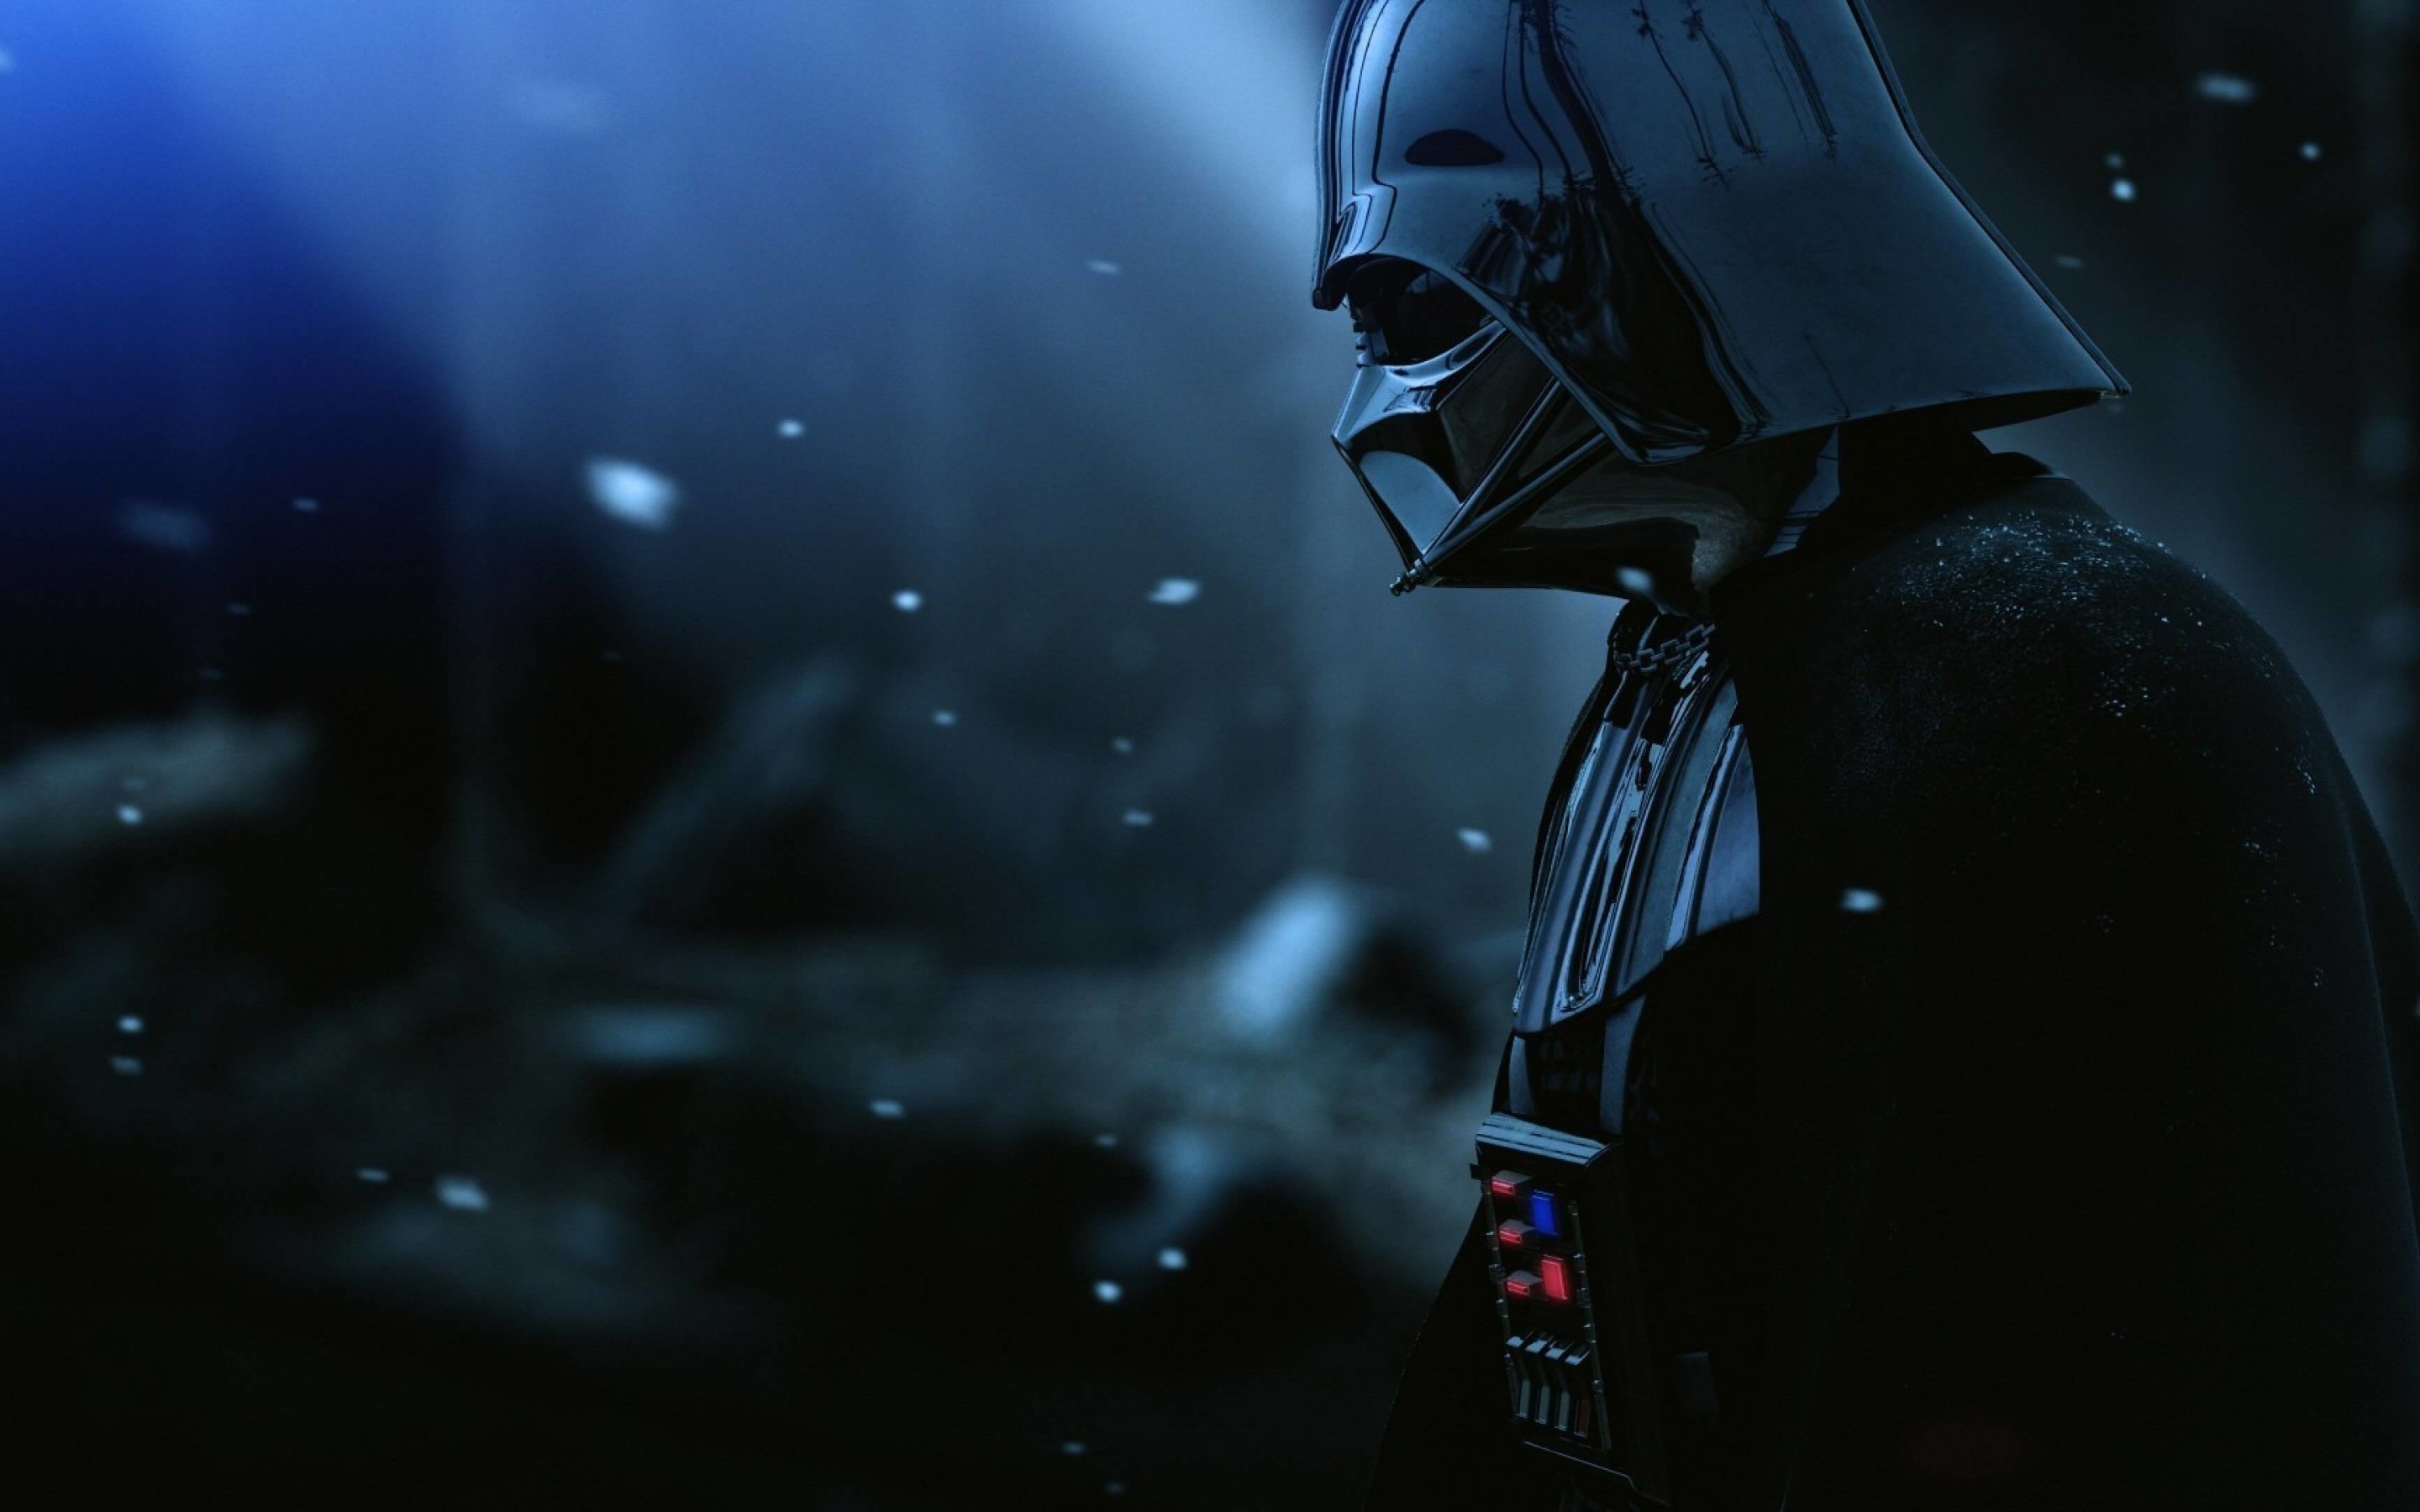 Darth Vader - The Force Unleashed 2 Wallpaper for Desktop 2880x1800